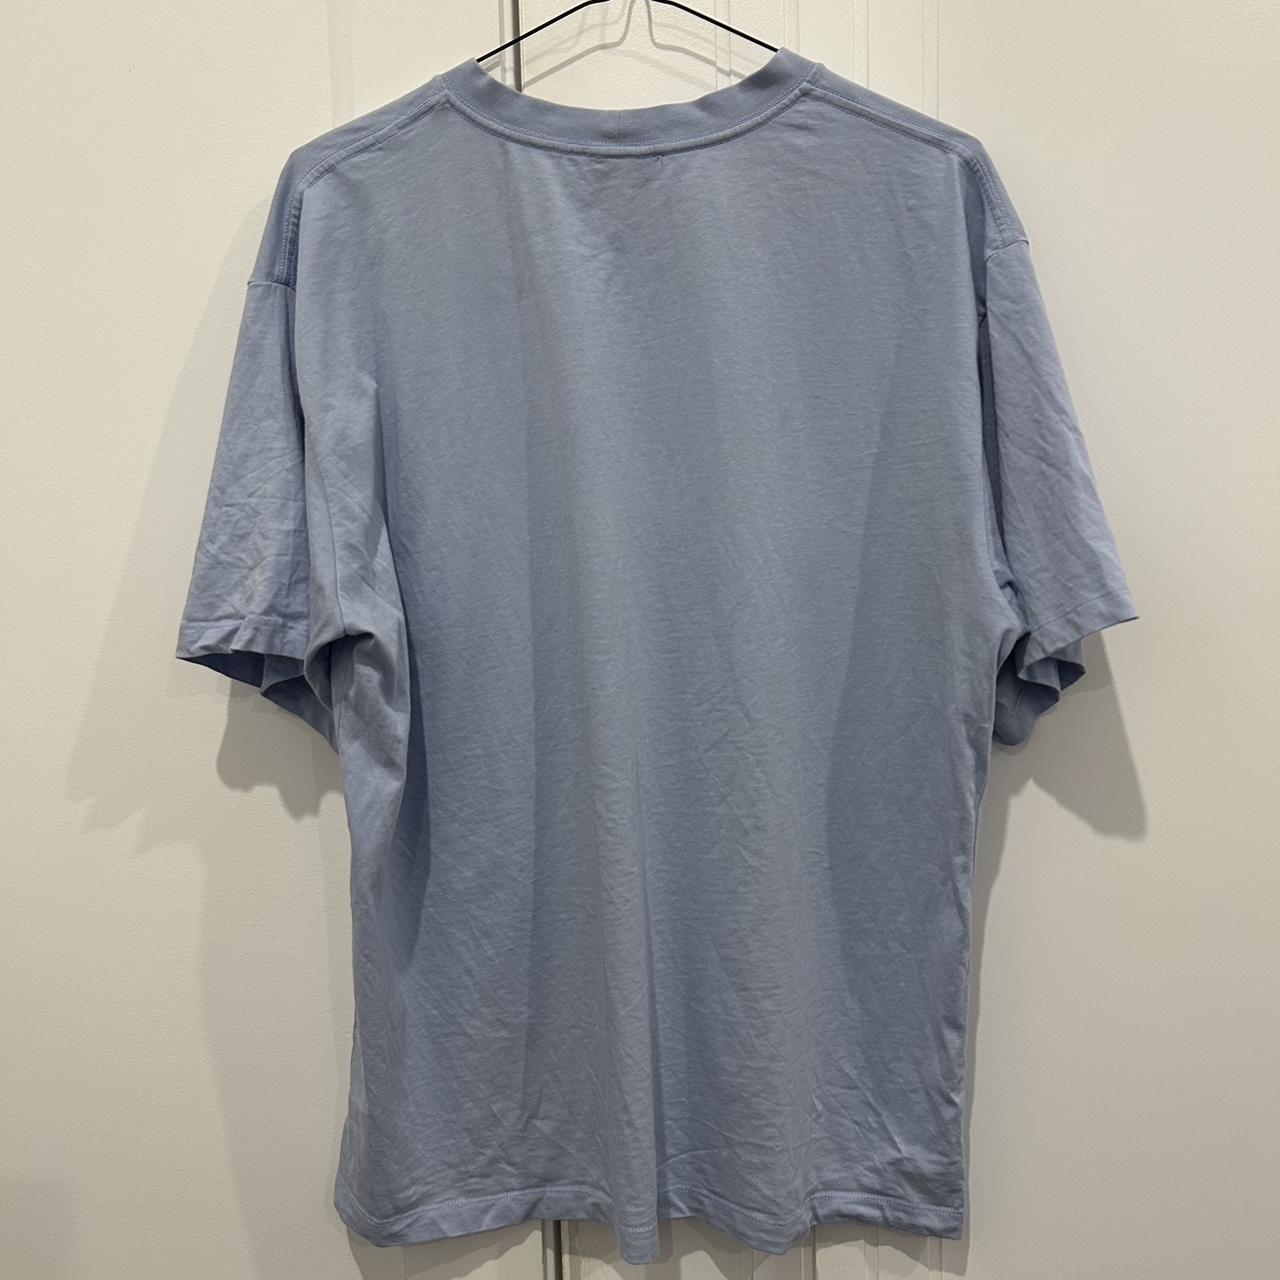 Sandro blue t-shirt #sandro #tshirt - Depop